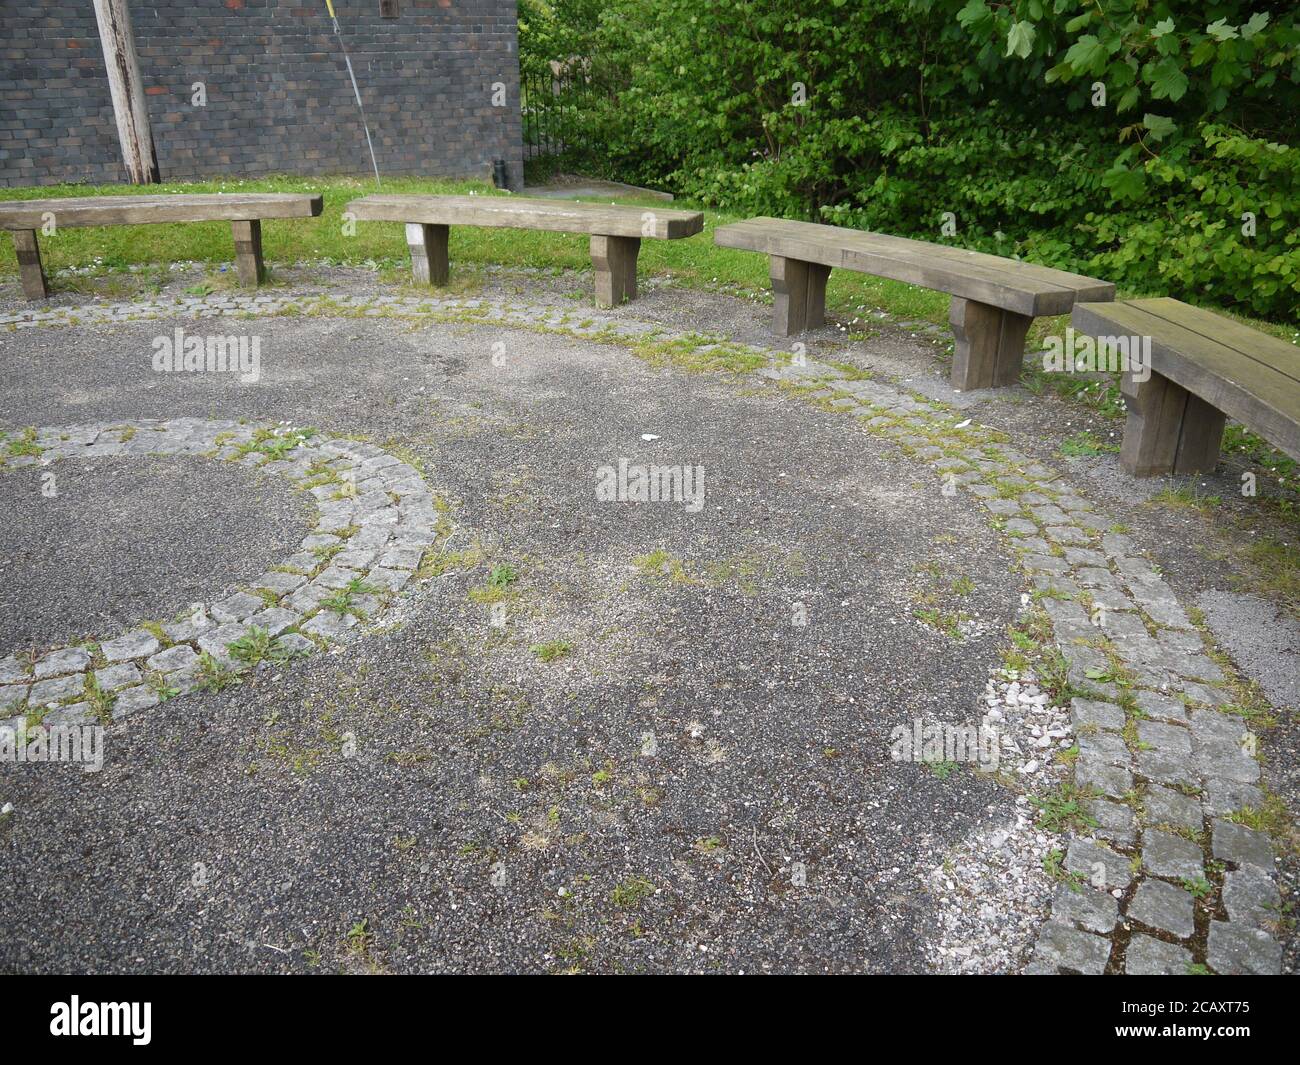 Disposición circular de asientos al aire libre Foto de stock